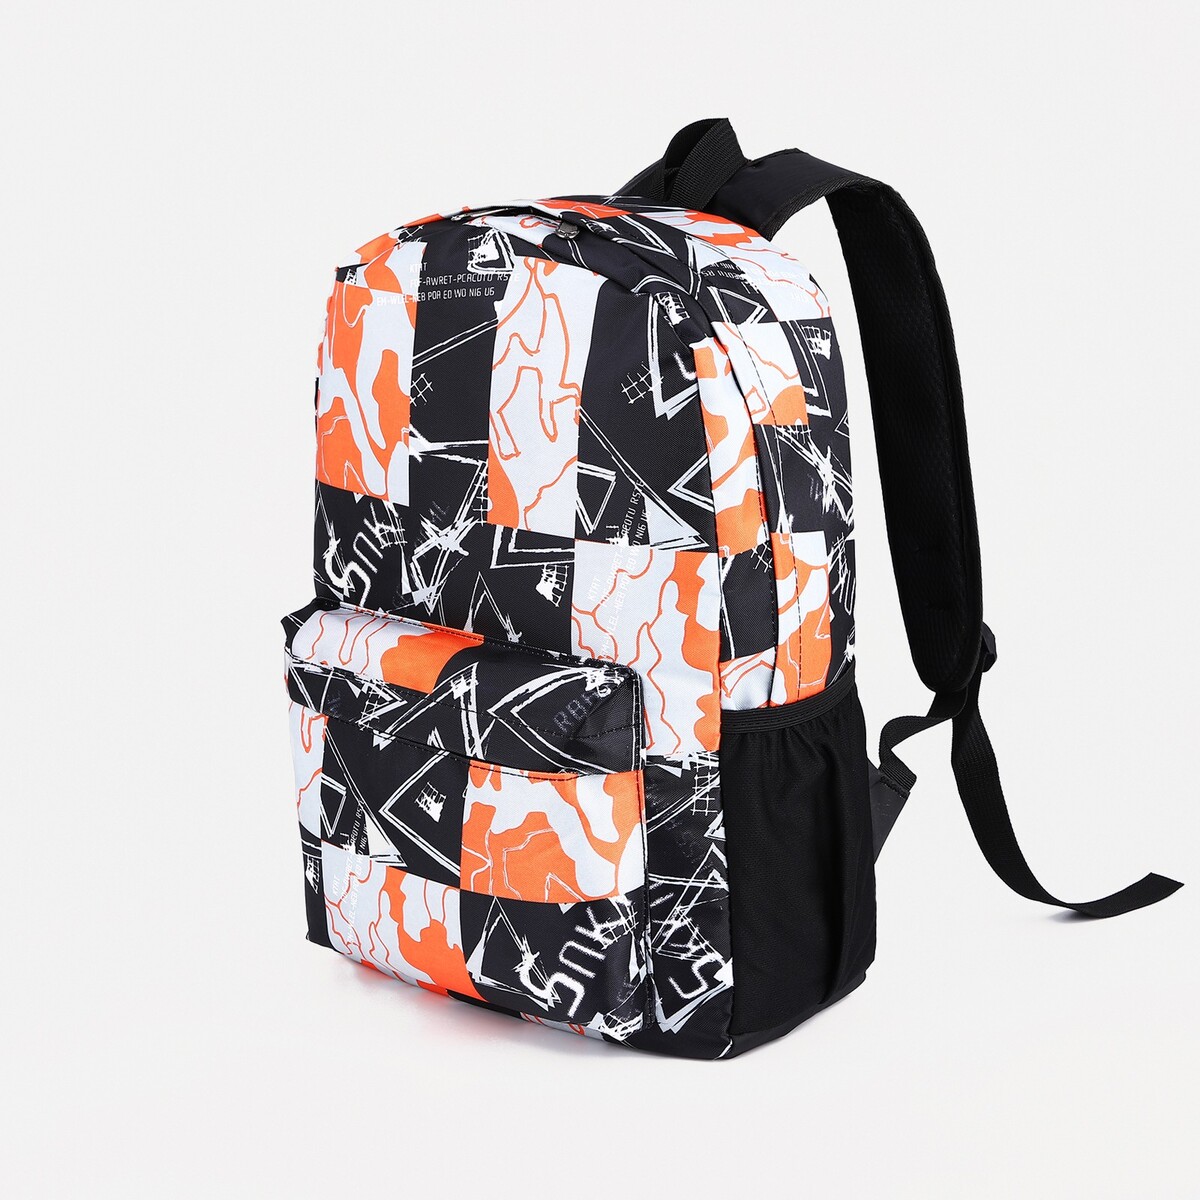 Рюкзак школьный из текстиля на молнии, 3 кармана, цвет оранжевый/черный рюкзак школьный из текстиля на молнии 4 кармана кошелек серый оранжевый